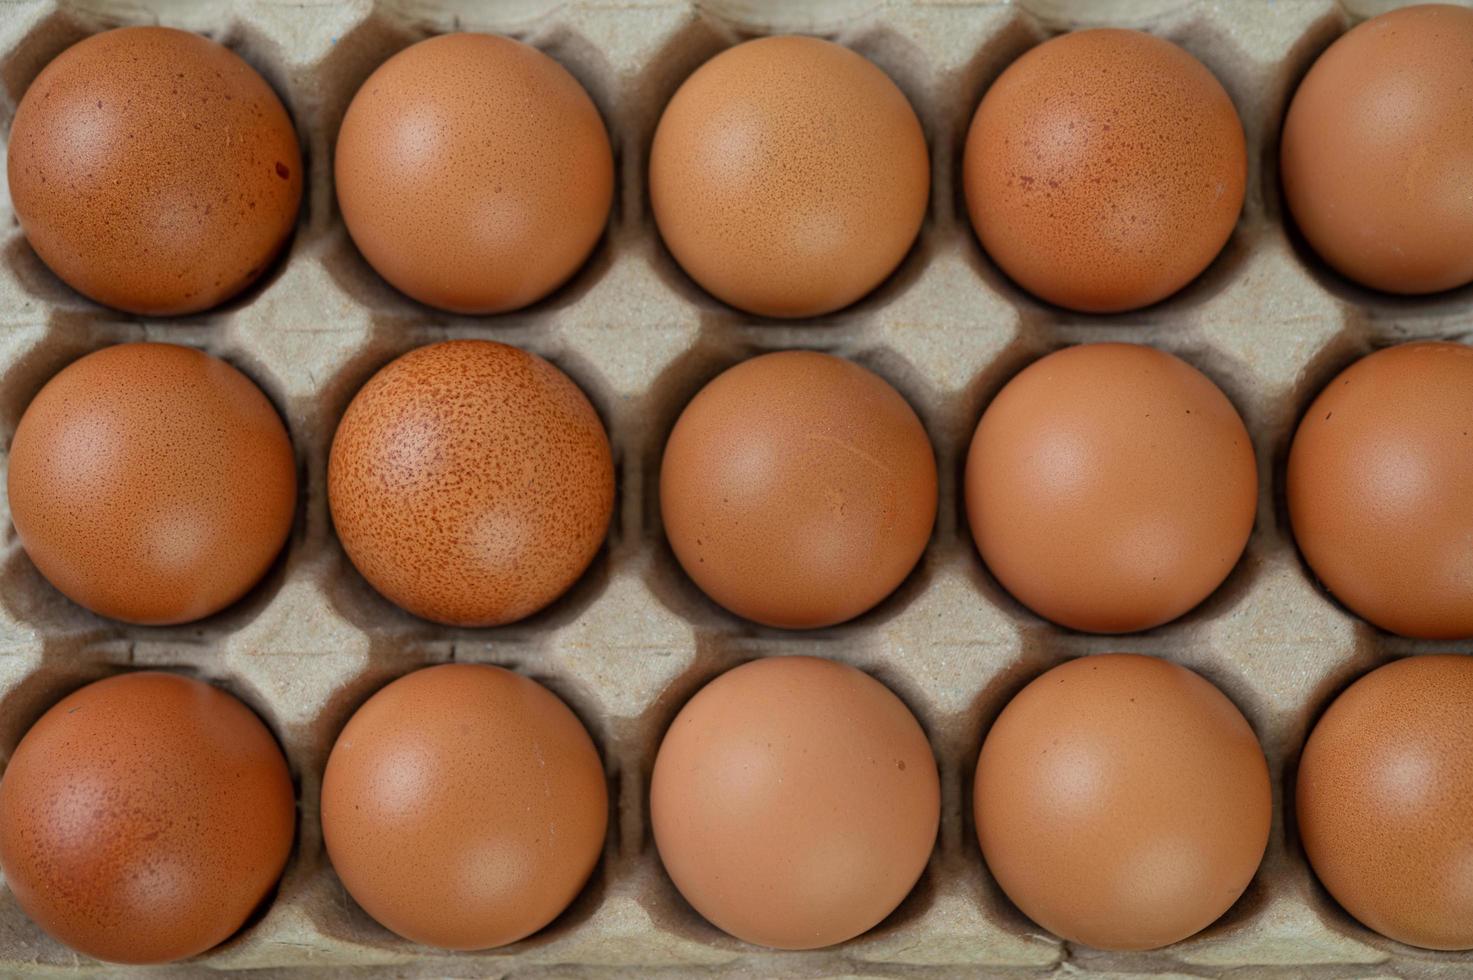 uova di gallina biologiche crude foto